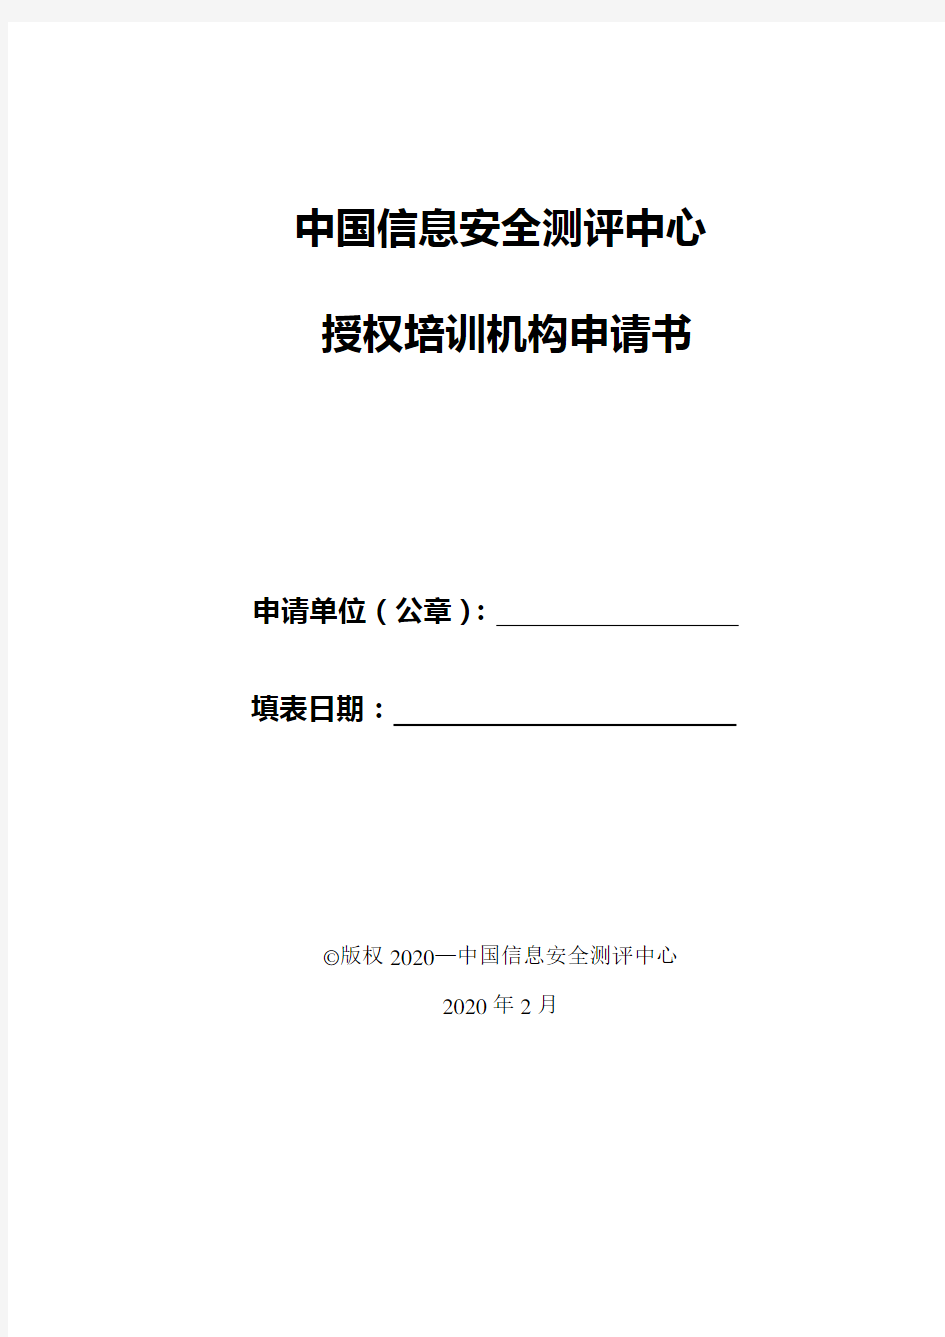 中国信息安全测评中心授权培训机构申请书